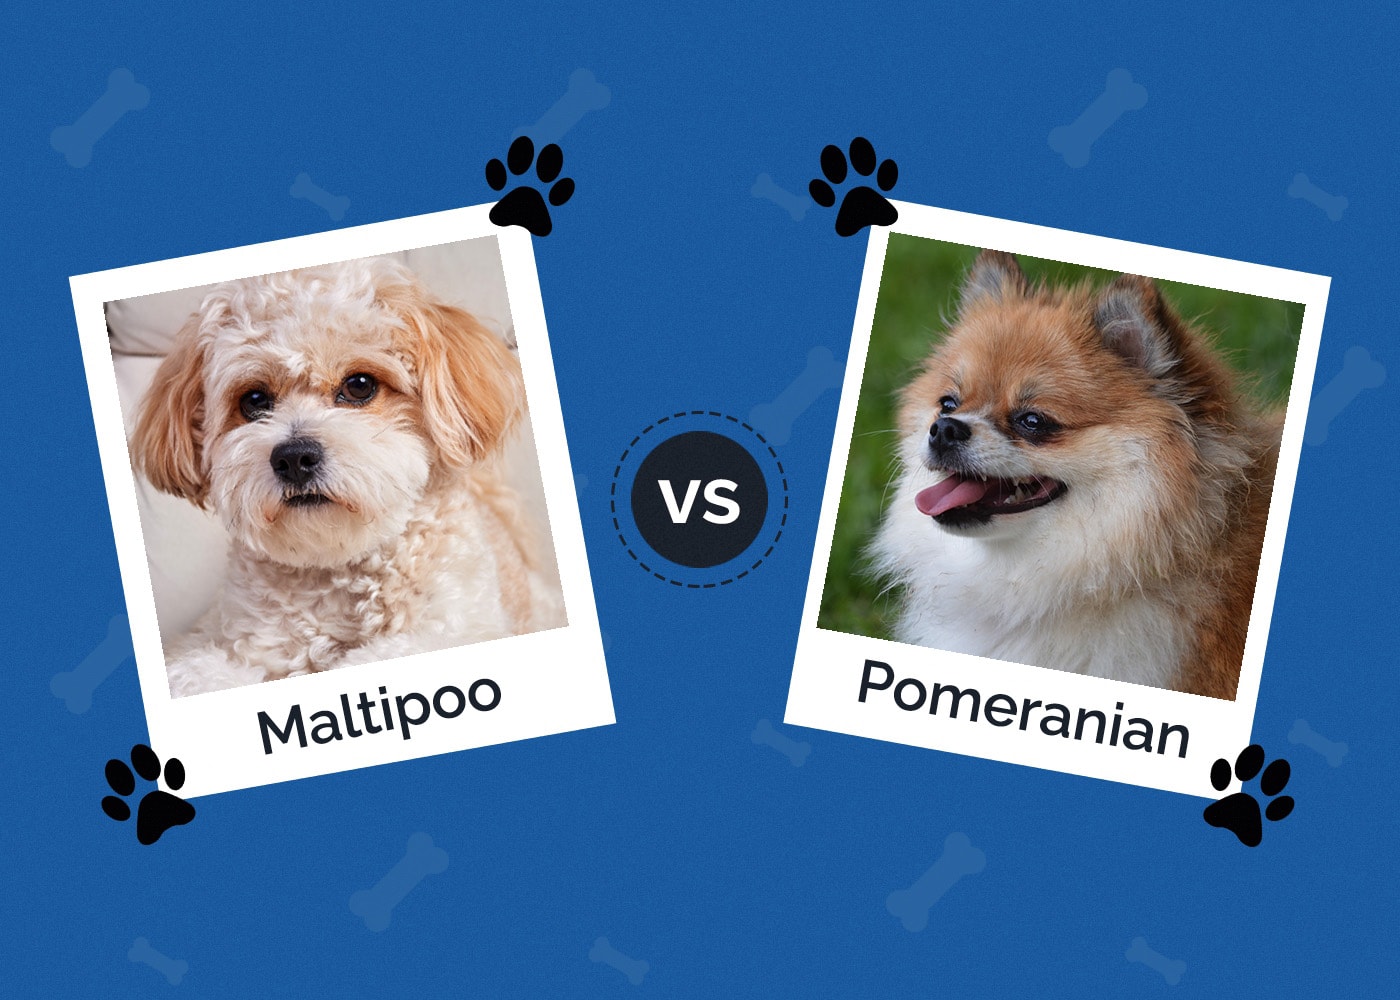 Maltipoo vs Pomeranian